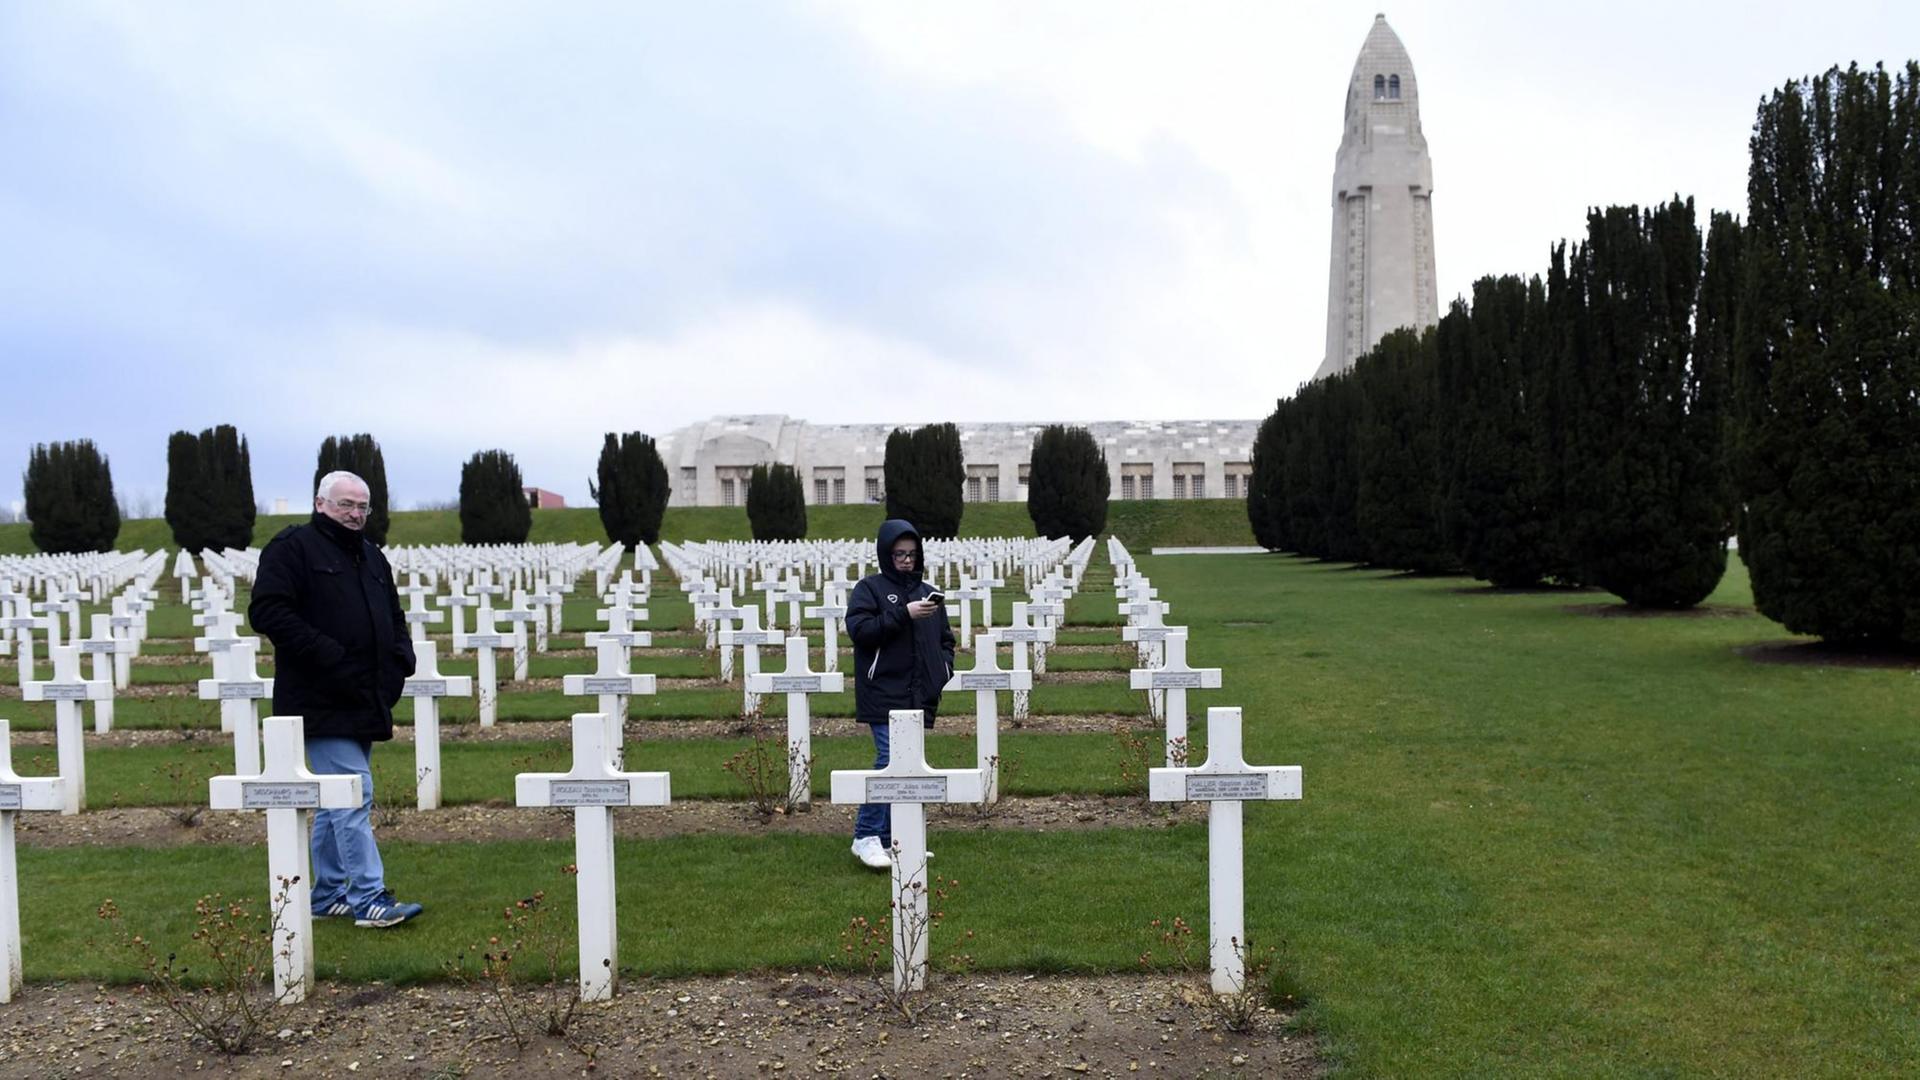 Vor dem Jahrestag anlässlich von 100 Jahren Erster Weltkrieg (1914 - 1918) - Schlacht von Verdun. Ein Mann und ein Junge durchstreifen die Gedenkkreuze für die gefallenen Soldaten. Anlässlich der Hundertjahrfeier der Schlacht von Verdun soll das neue "Verdun Memorial" eröffnet werden.